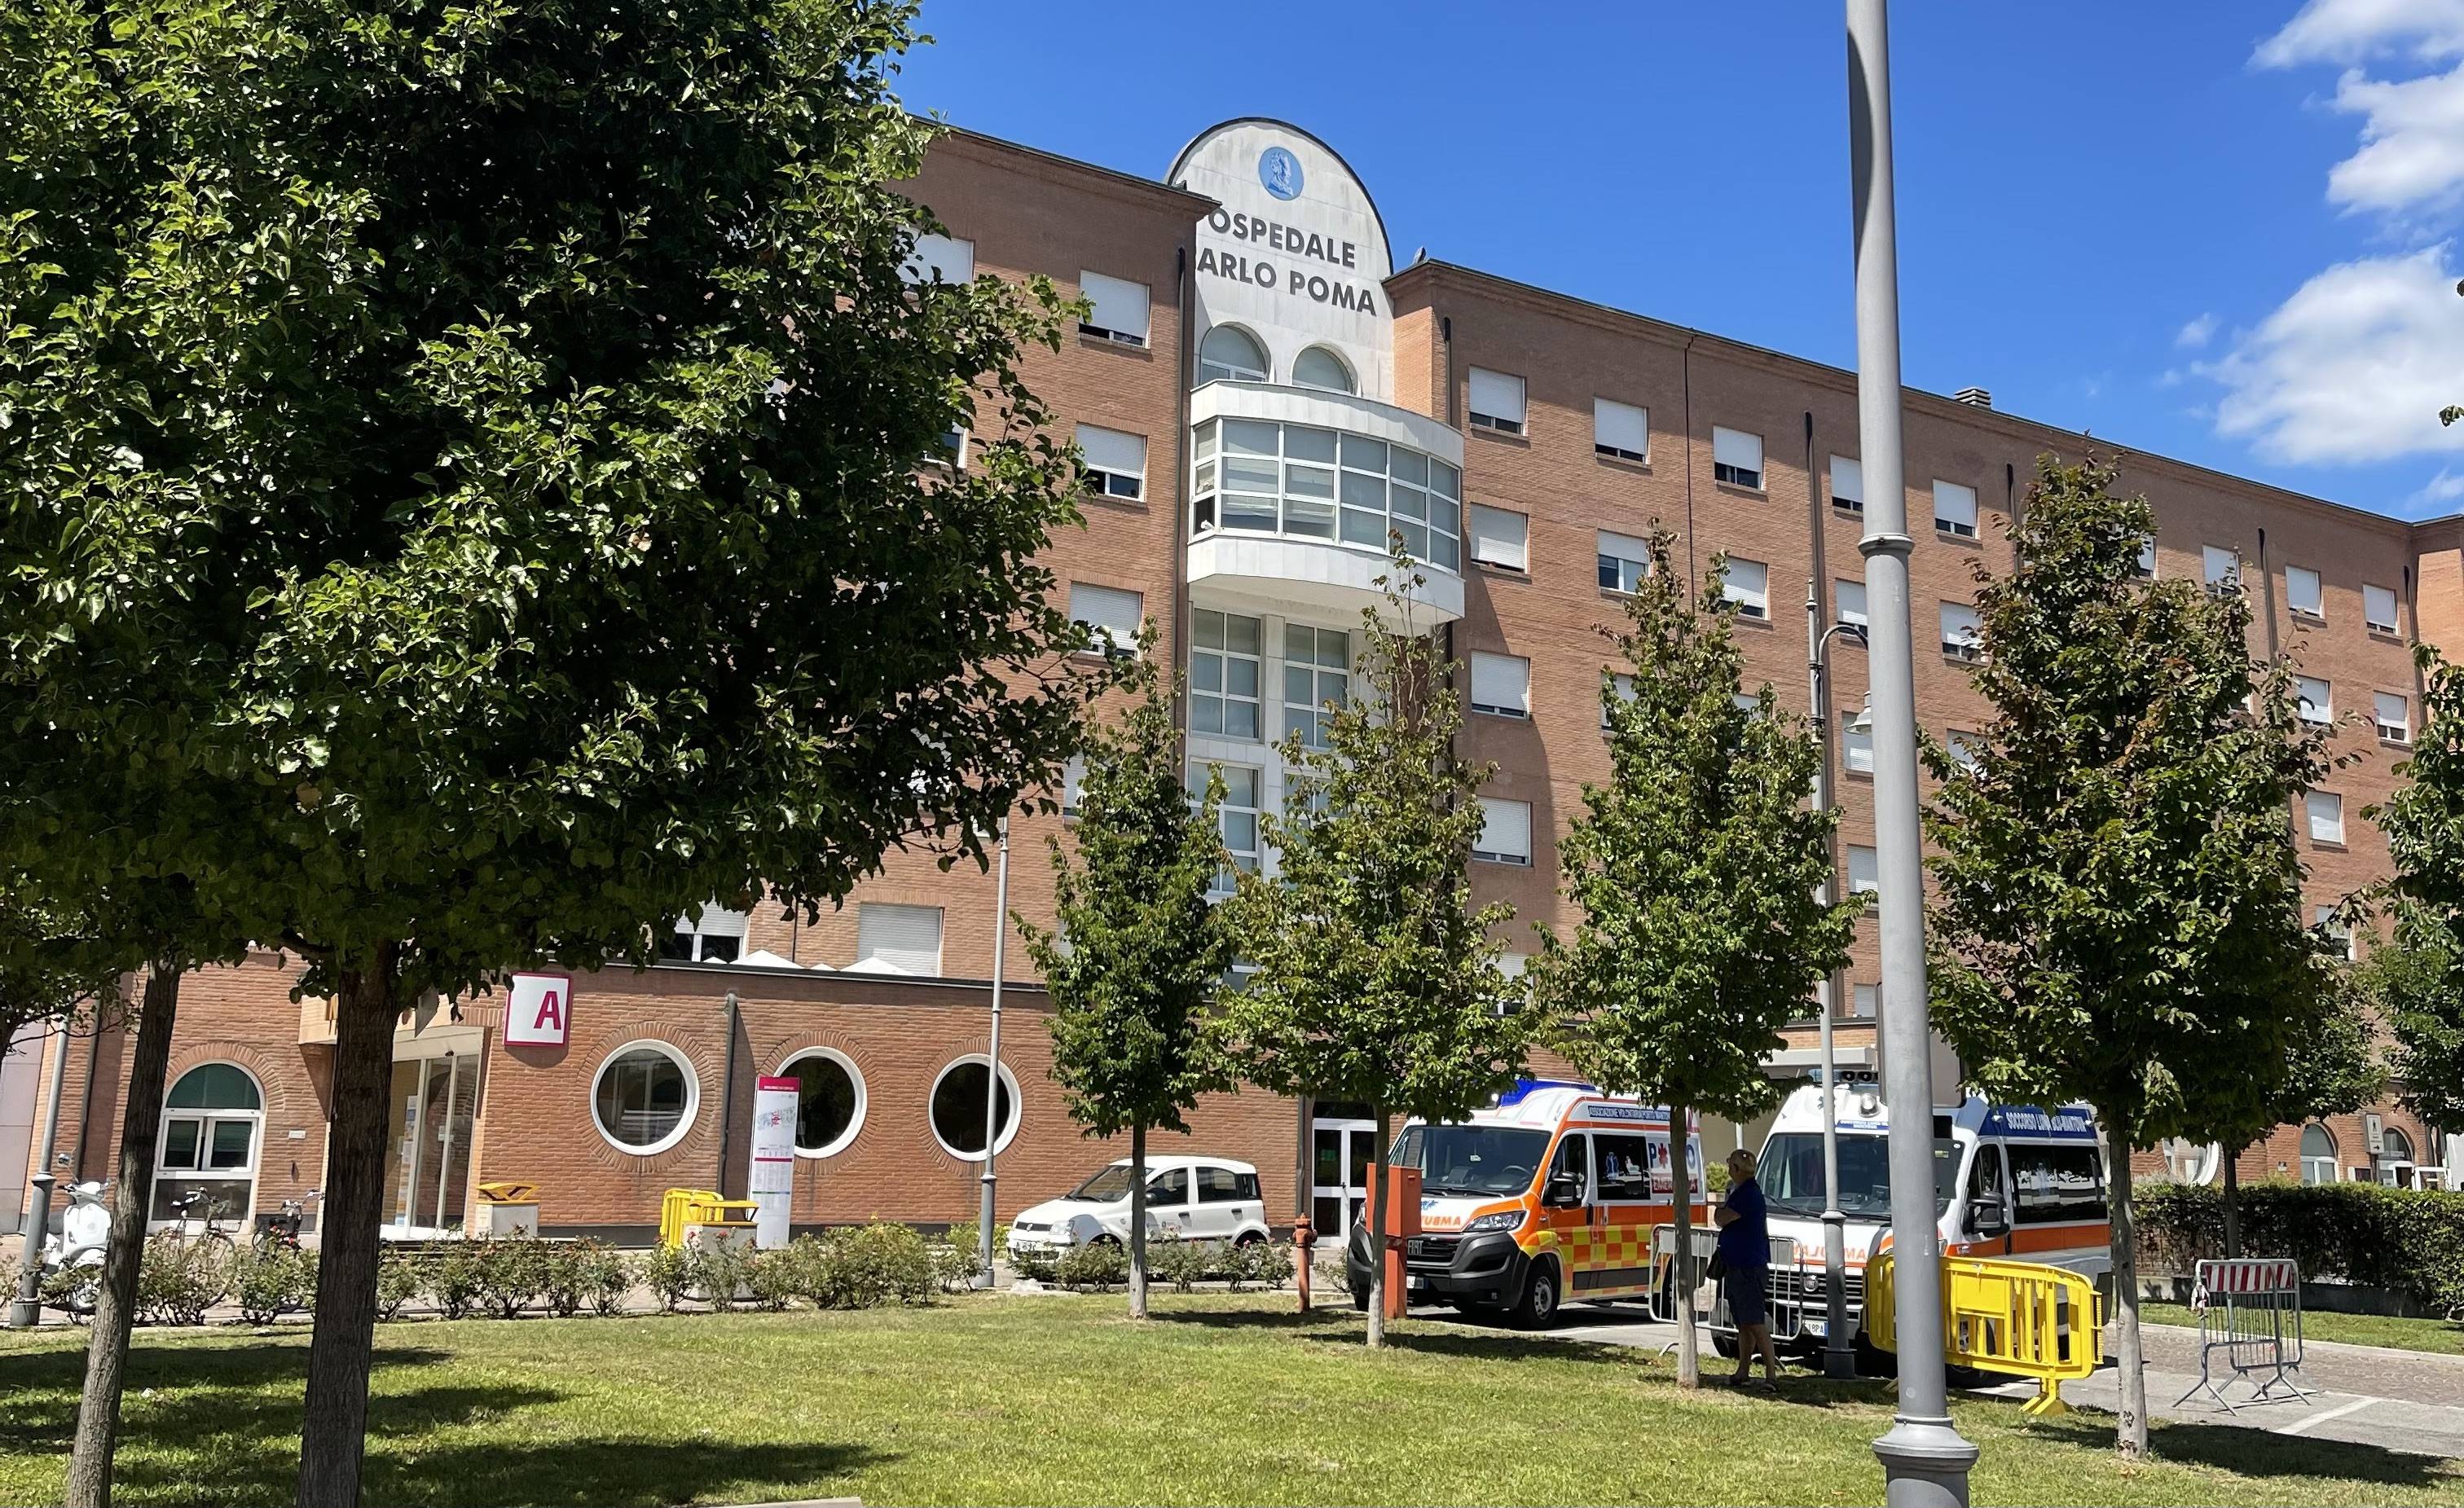 Ospedale Carlo Poma Public Hospital in Mantua, Italy